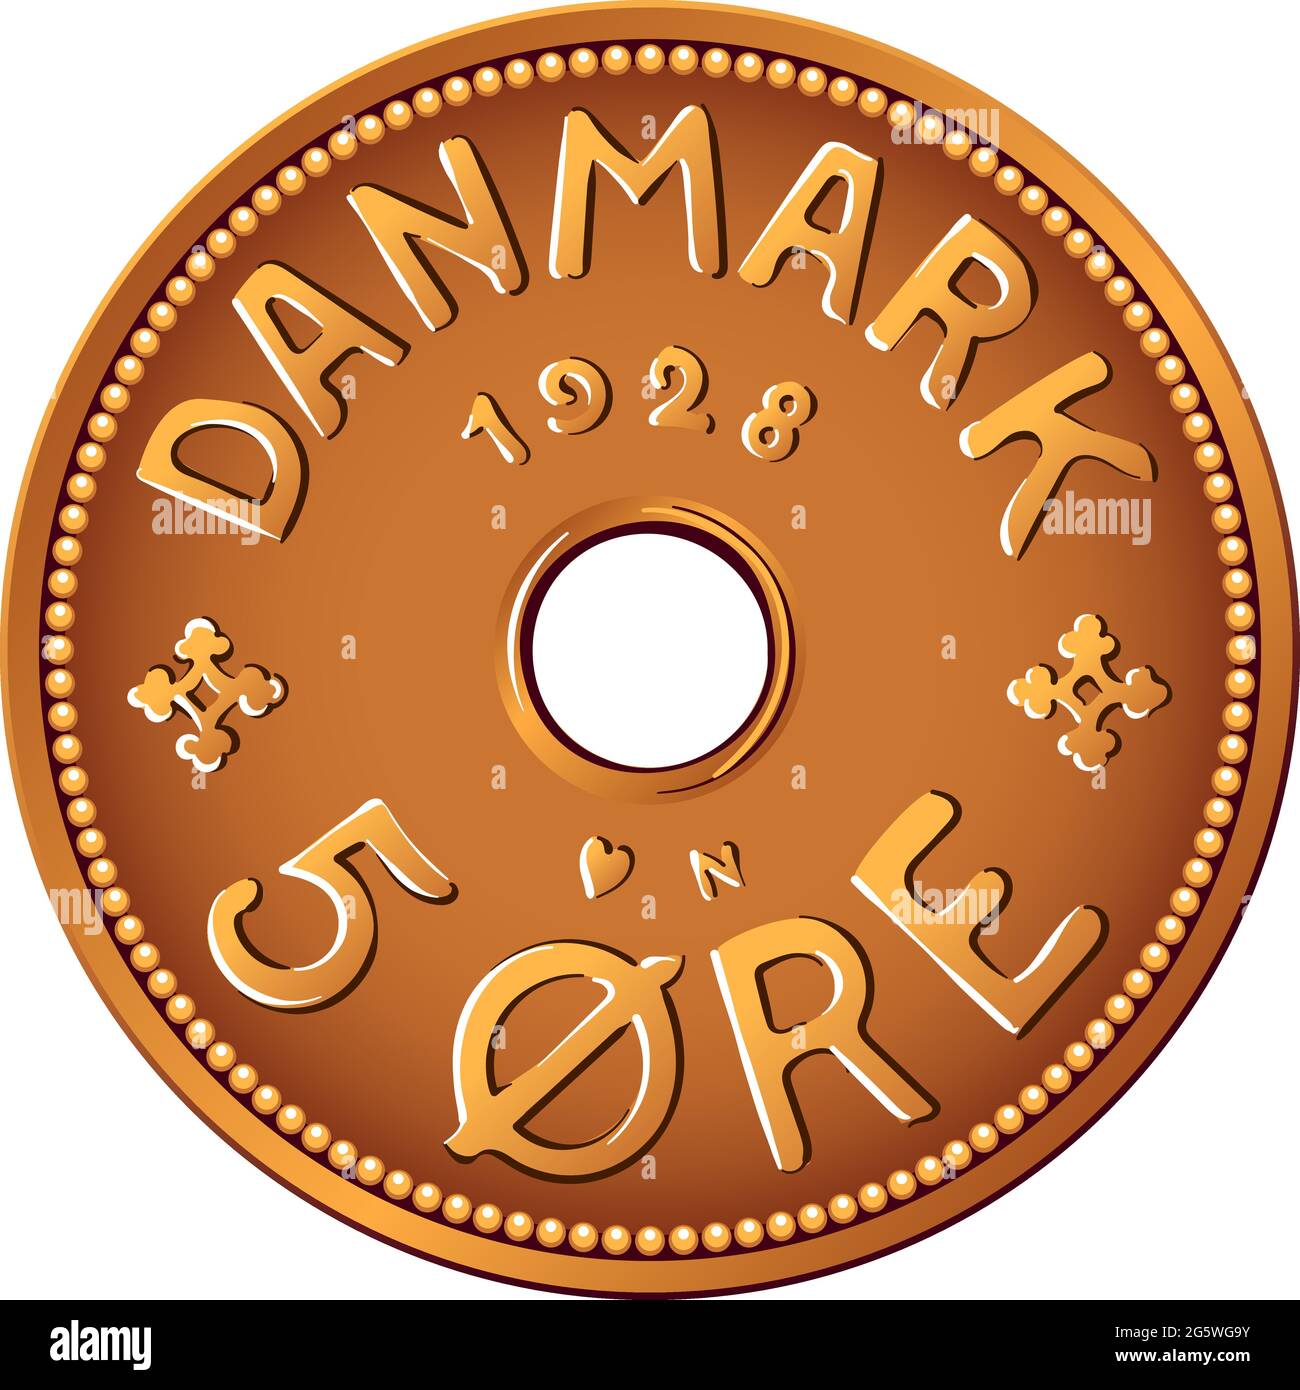 Anverso del dinero danés estaño-bronce 5 moneda de mineral. Krone, moneda oficial de Dinamarca, Groenlandia y las Islas Feroe. Ilustración del Vector